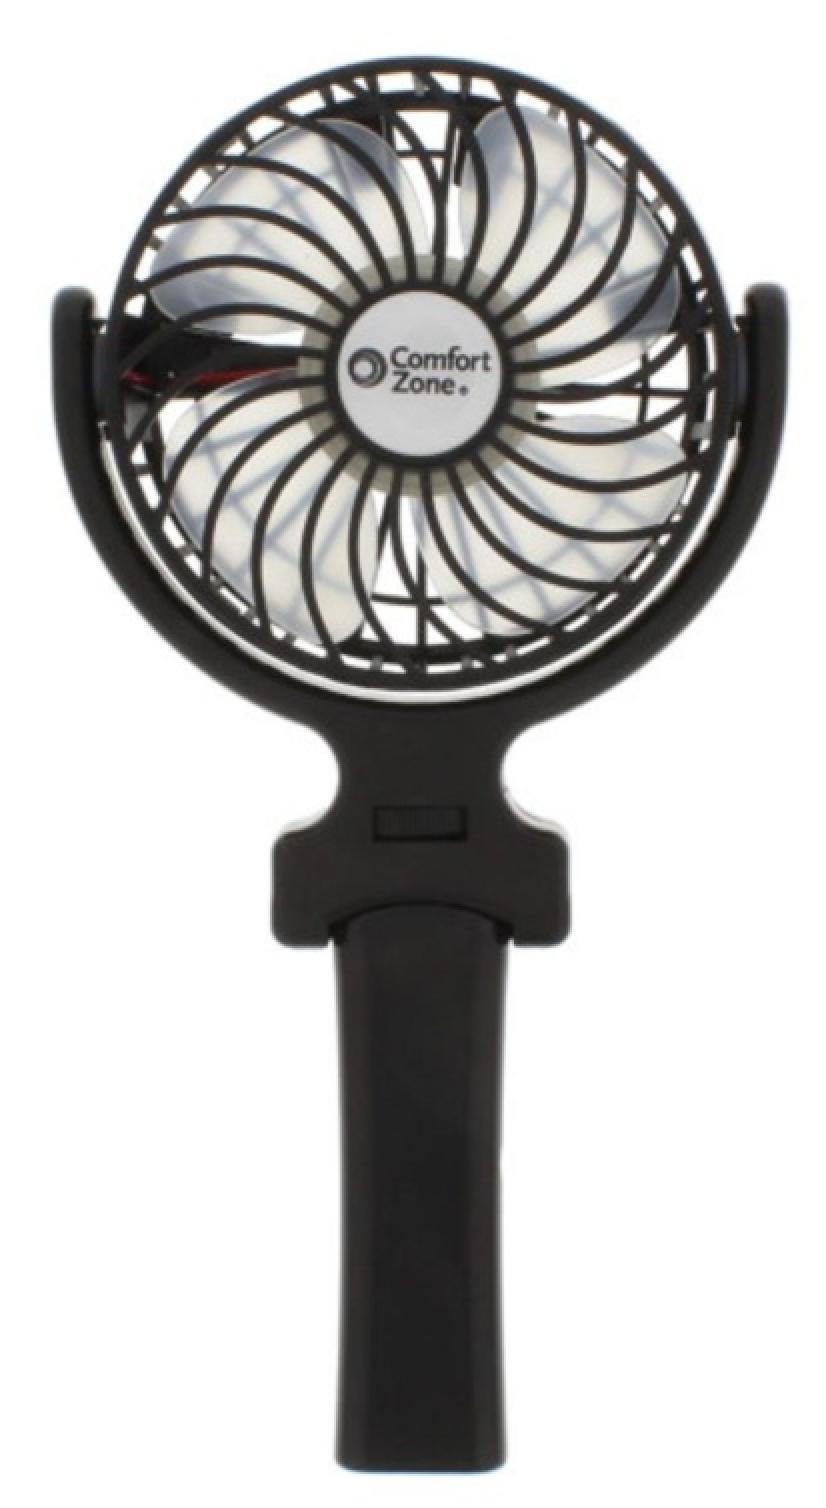 Comfort Zone 4 inch Handheld Rechargeable Fan